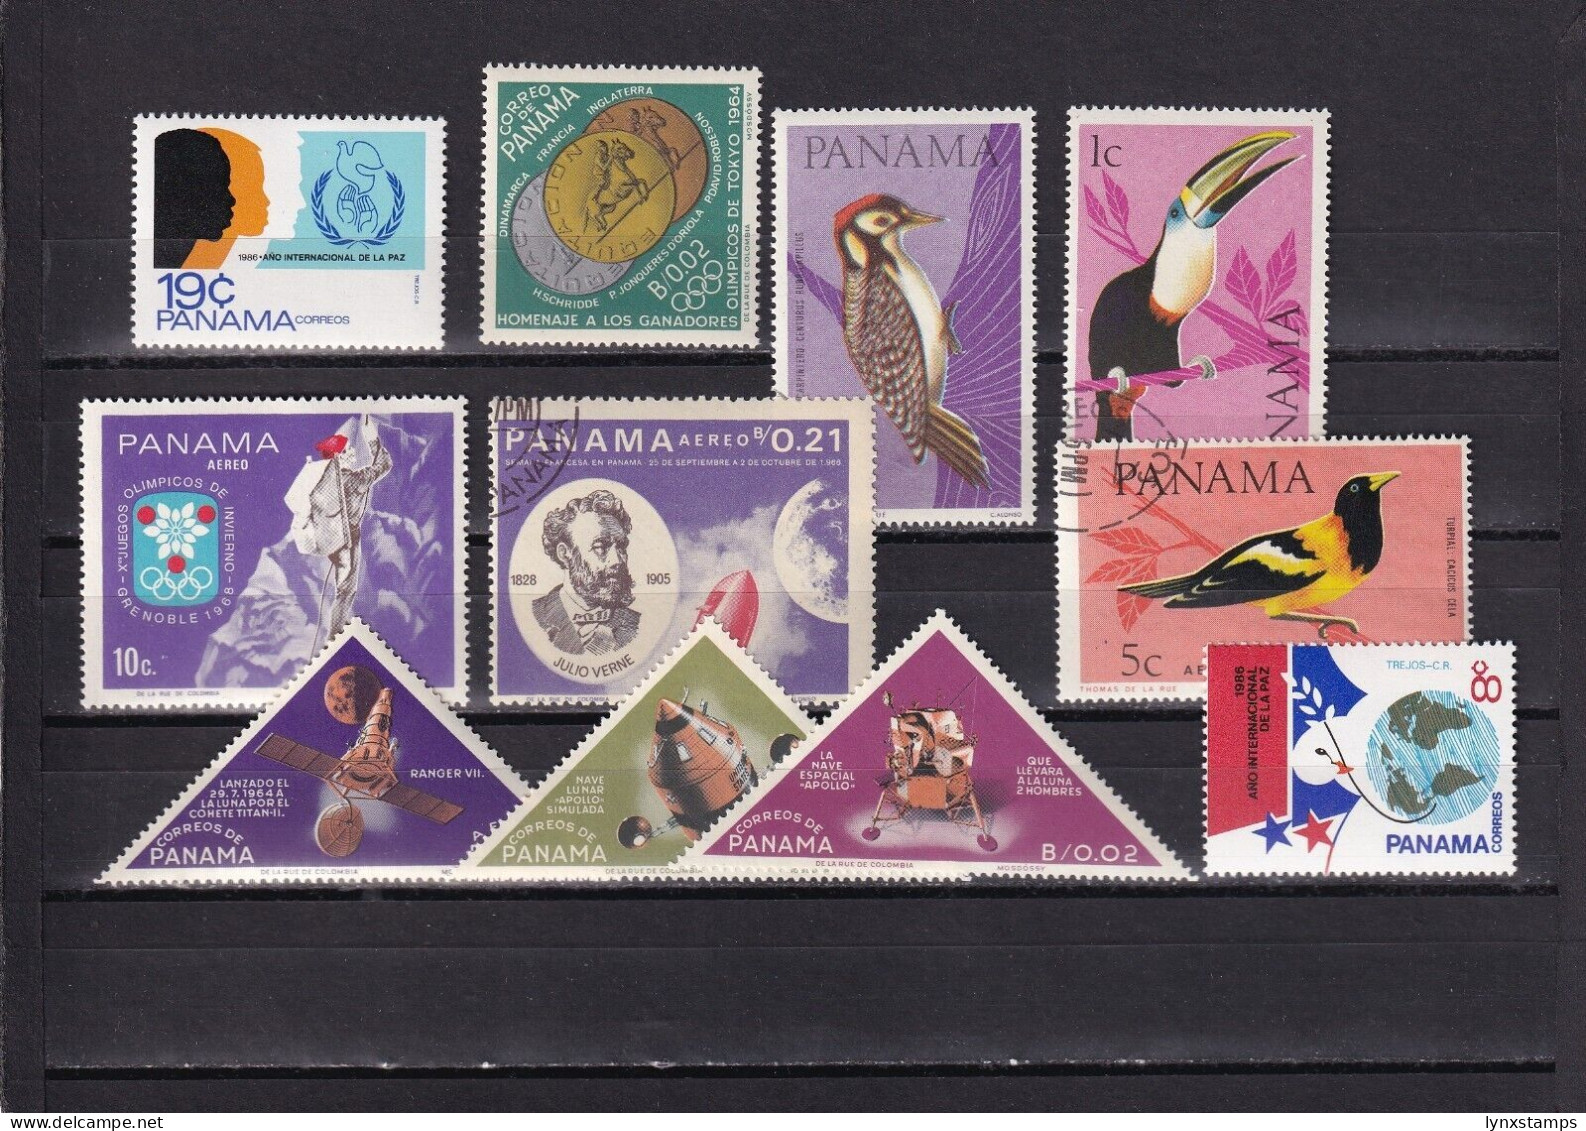 SA03 Panama Various Selection Of Mint And Used Stamps - Panama